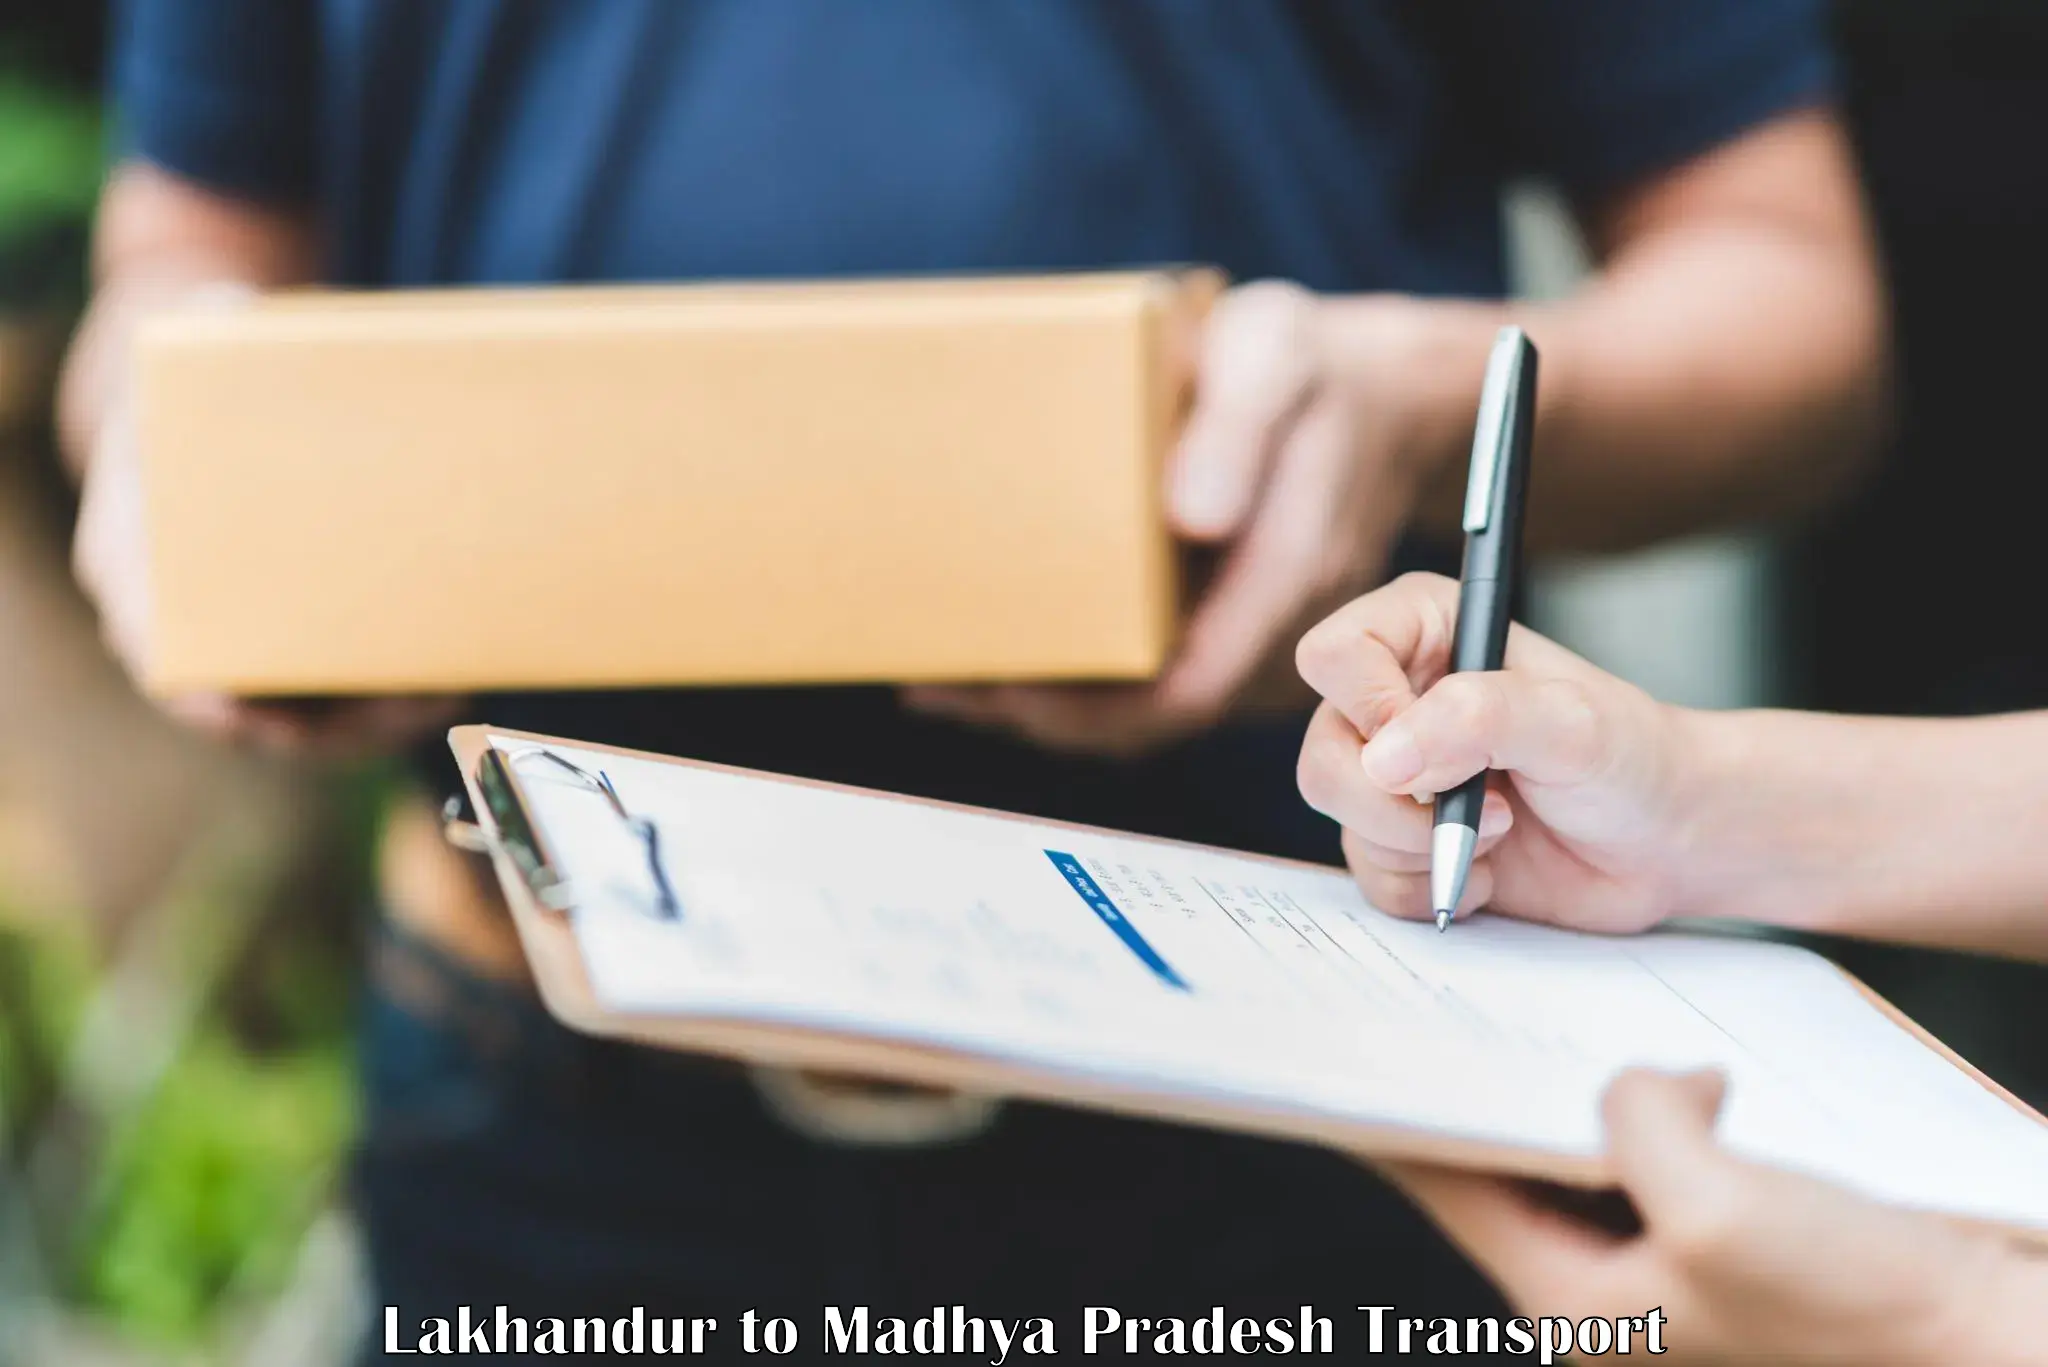 Bike shipping service Lakhandur to Hatta